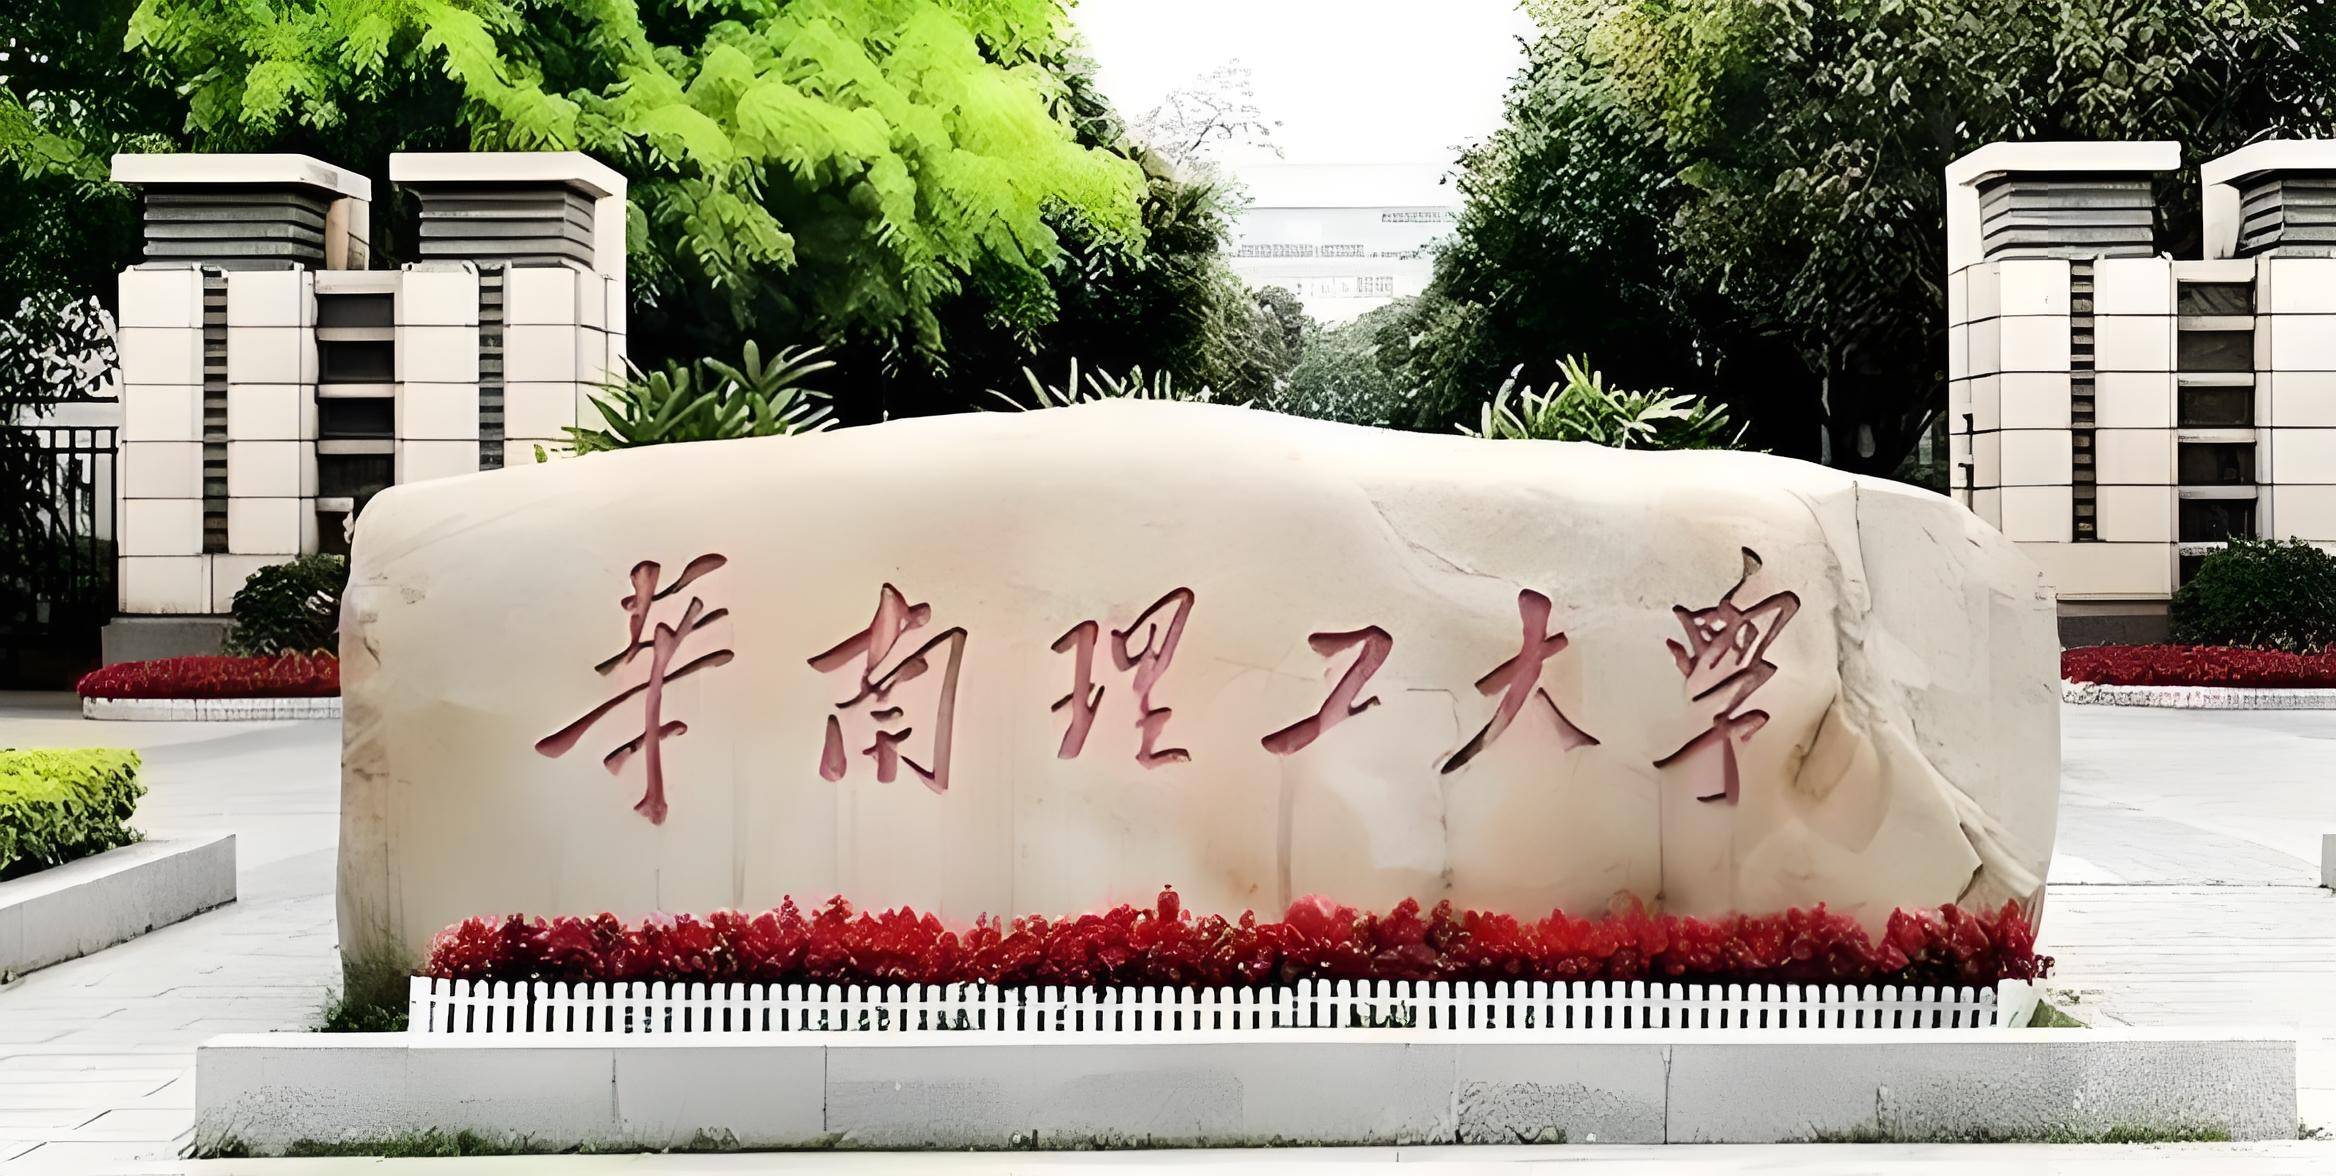 华南理工大学:南国科技巨擘的辉煌轨迹